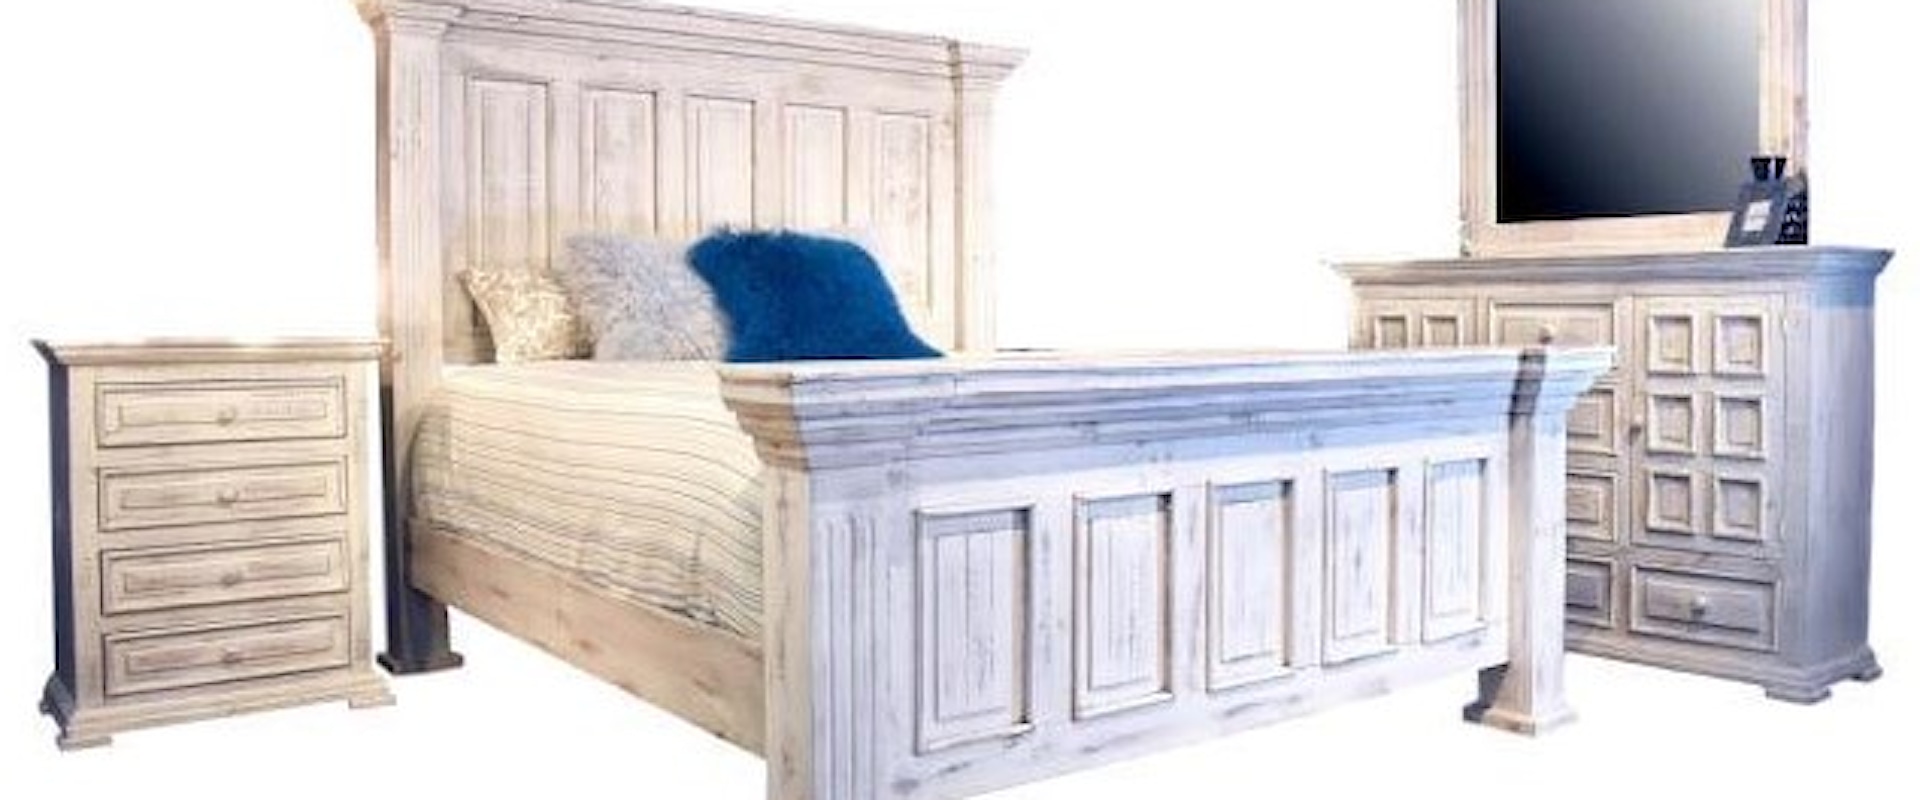 Chalet King Bedroom- King Bed,Dresser/Mirror,Nightstand